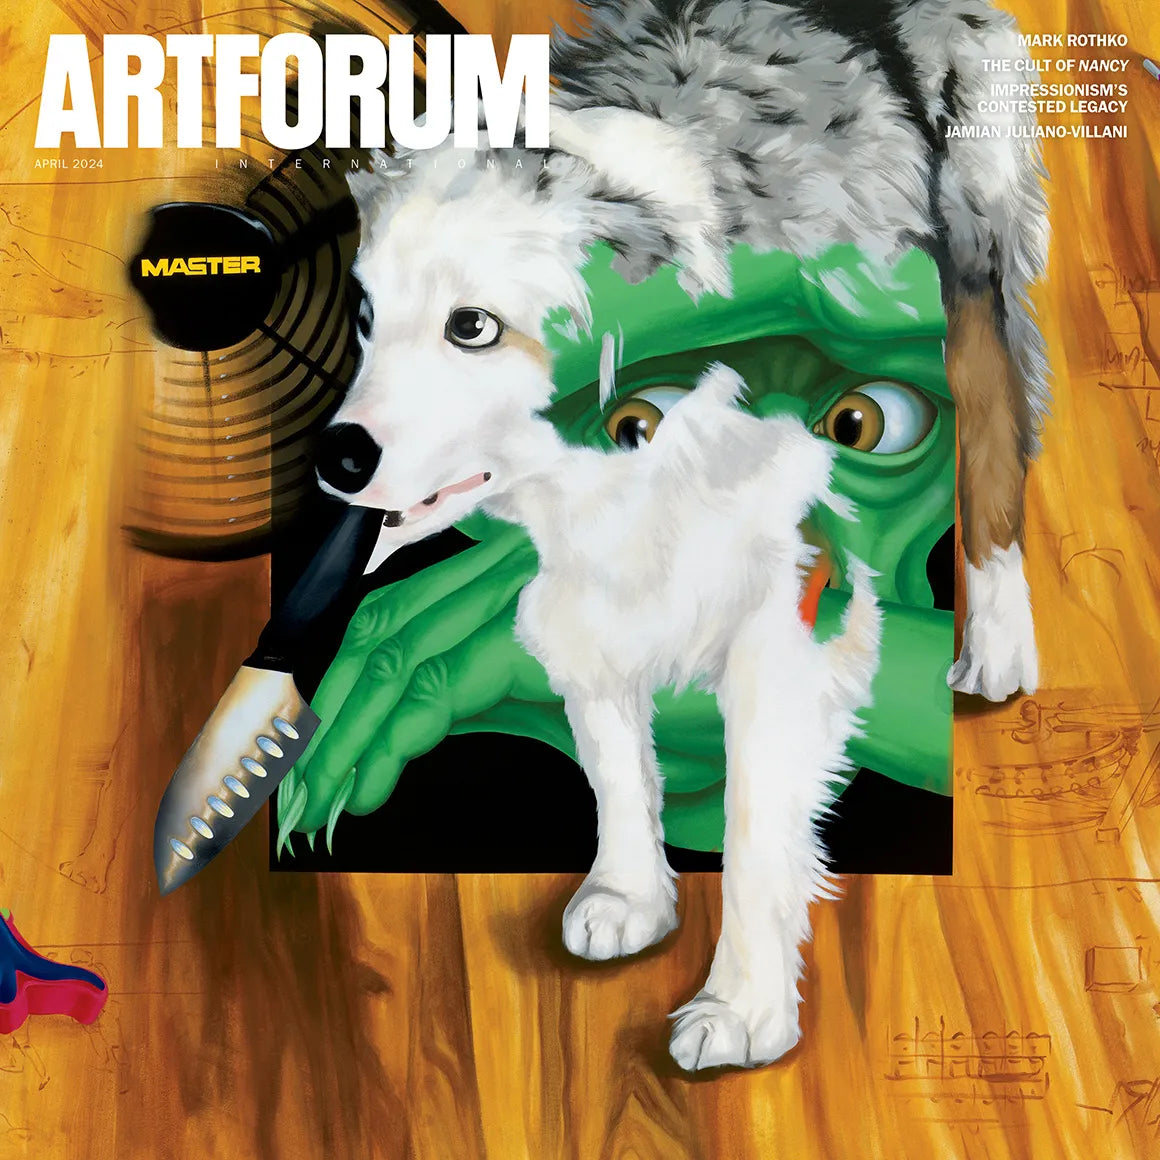 Artforum Magazine